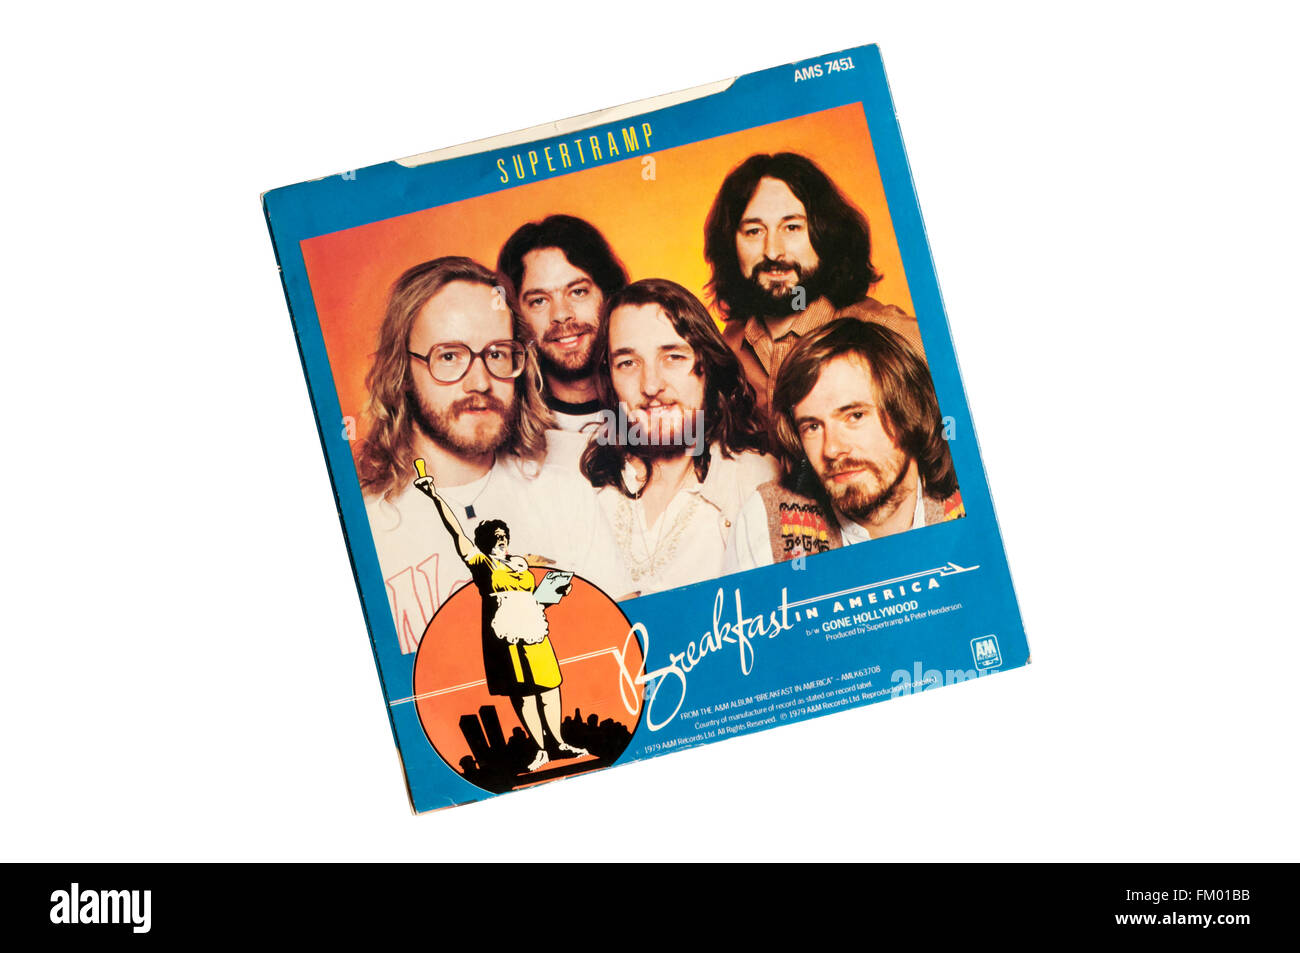 Frühstück in Amerika war der Titelsong von Supertramp 1979 Album des gleichen Namens. Das Foto zeigt die Rückseite der Single. Stockfoto